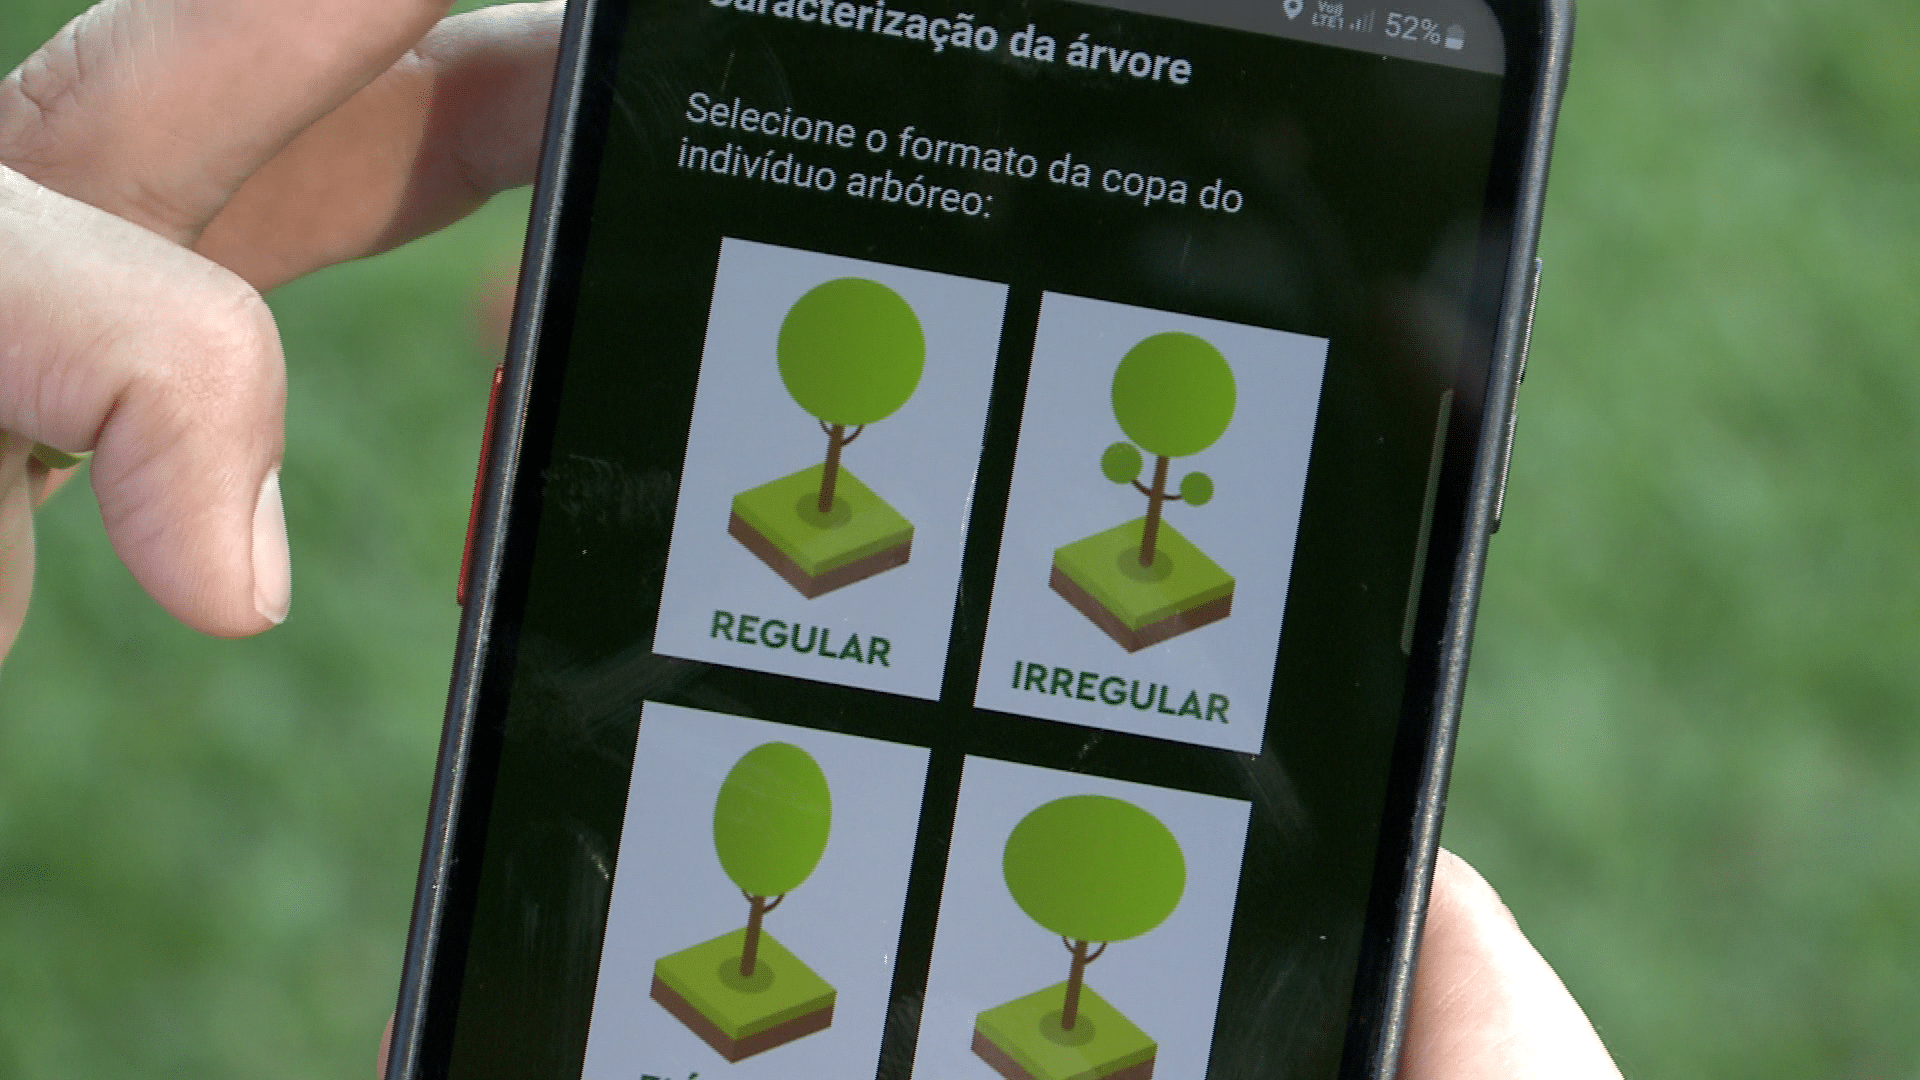 Moradores utilizam plataforma para mapeamento de árvores em condomínio